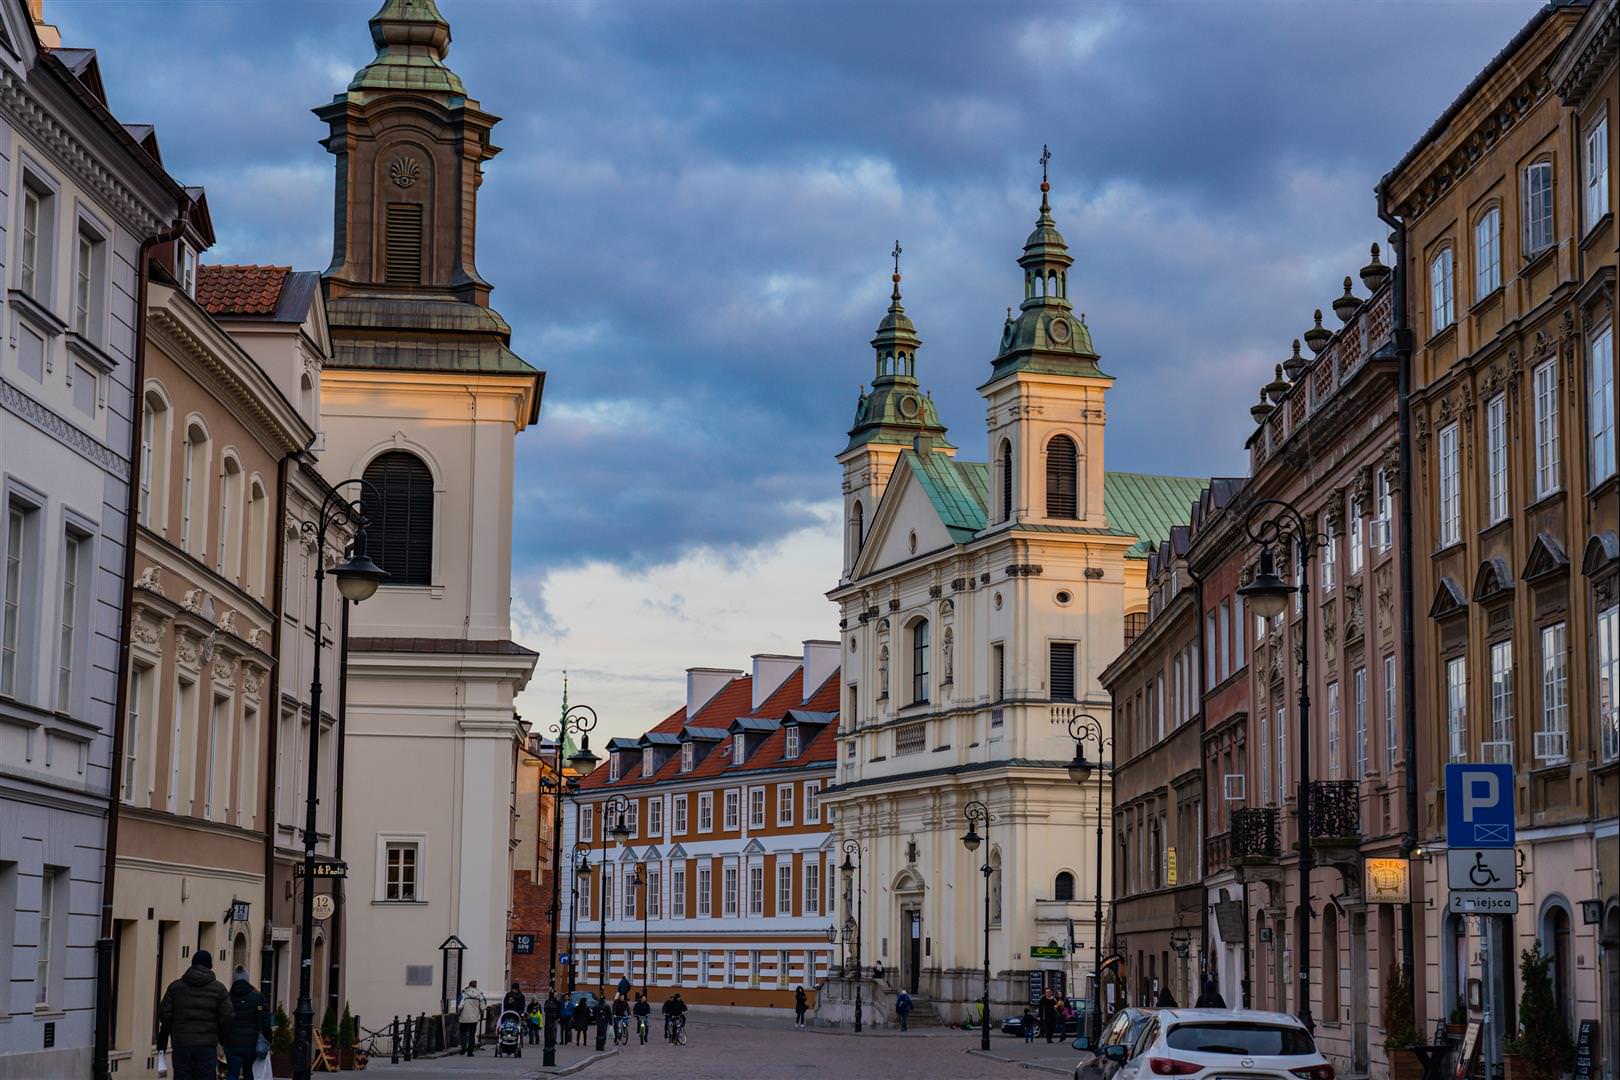 [波蘭/華沙] 華沙景點 整理 - 華沙科學宮、聖十字教堂、蕭邦故居、皇家城堡、老城廣場